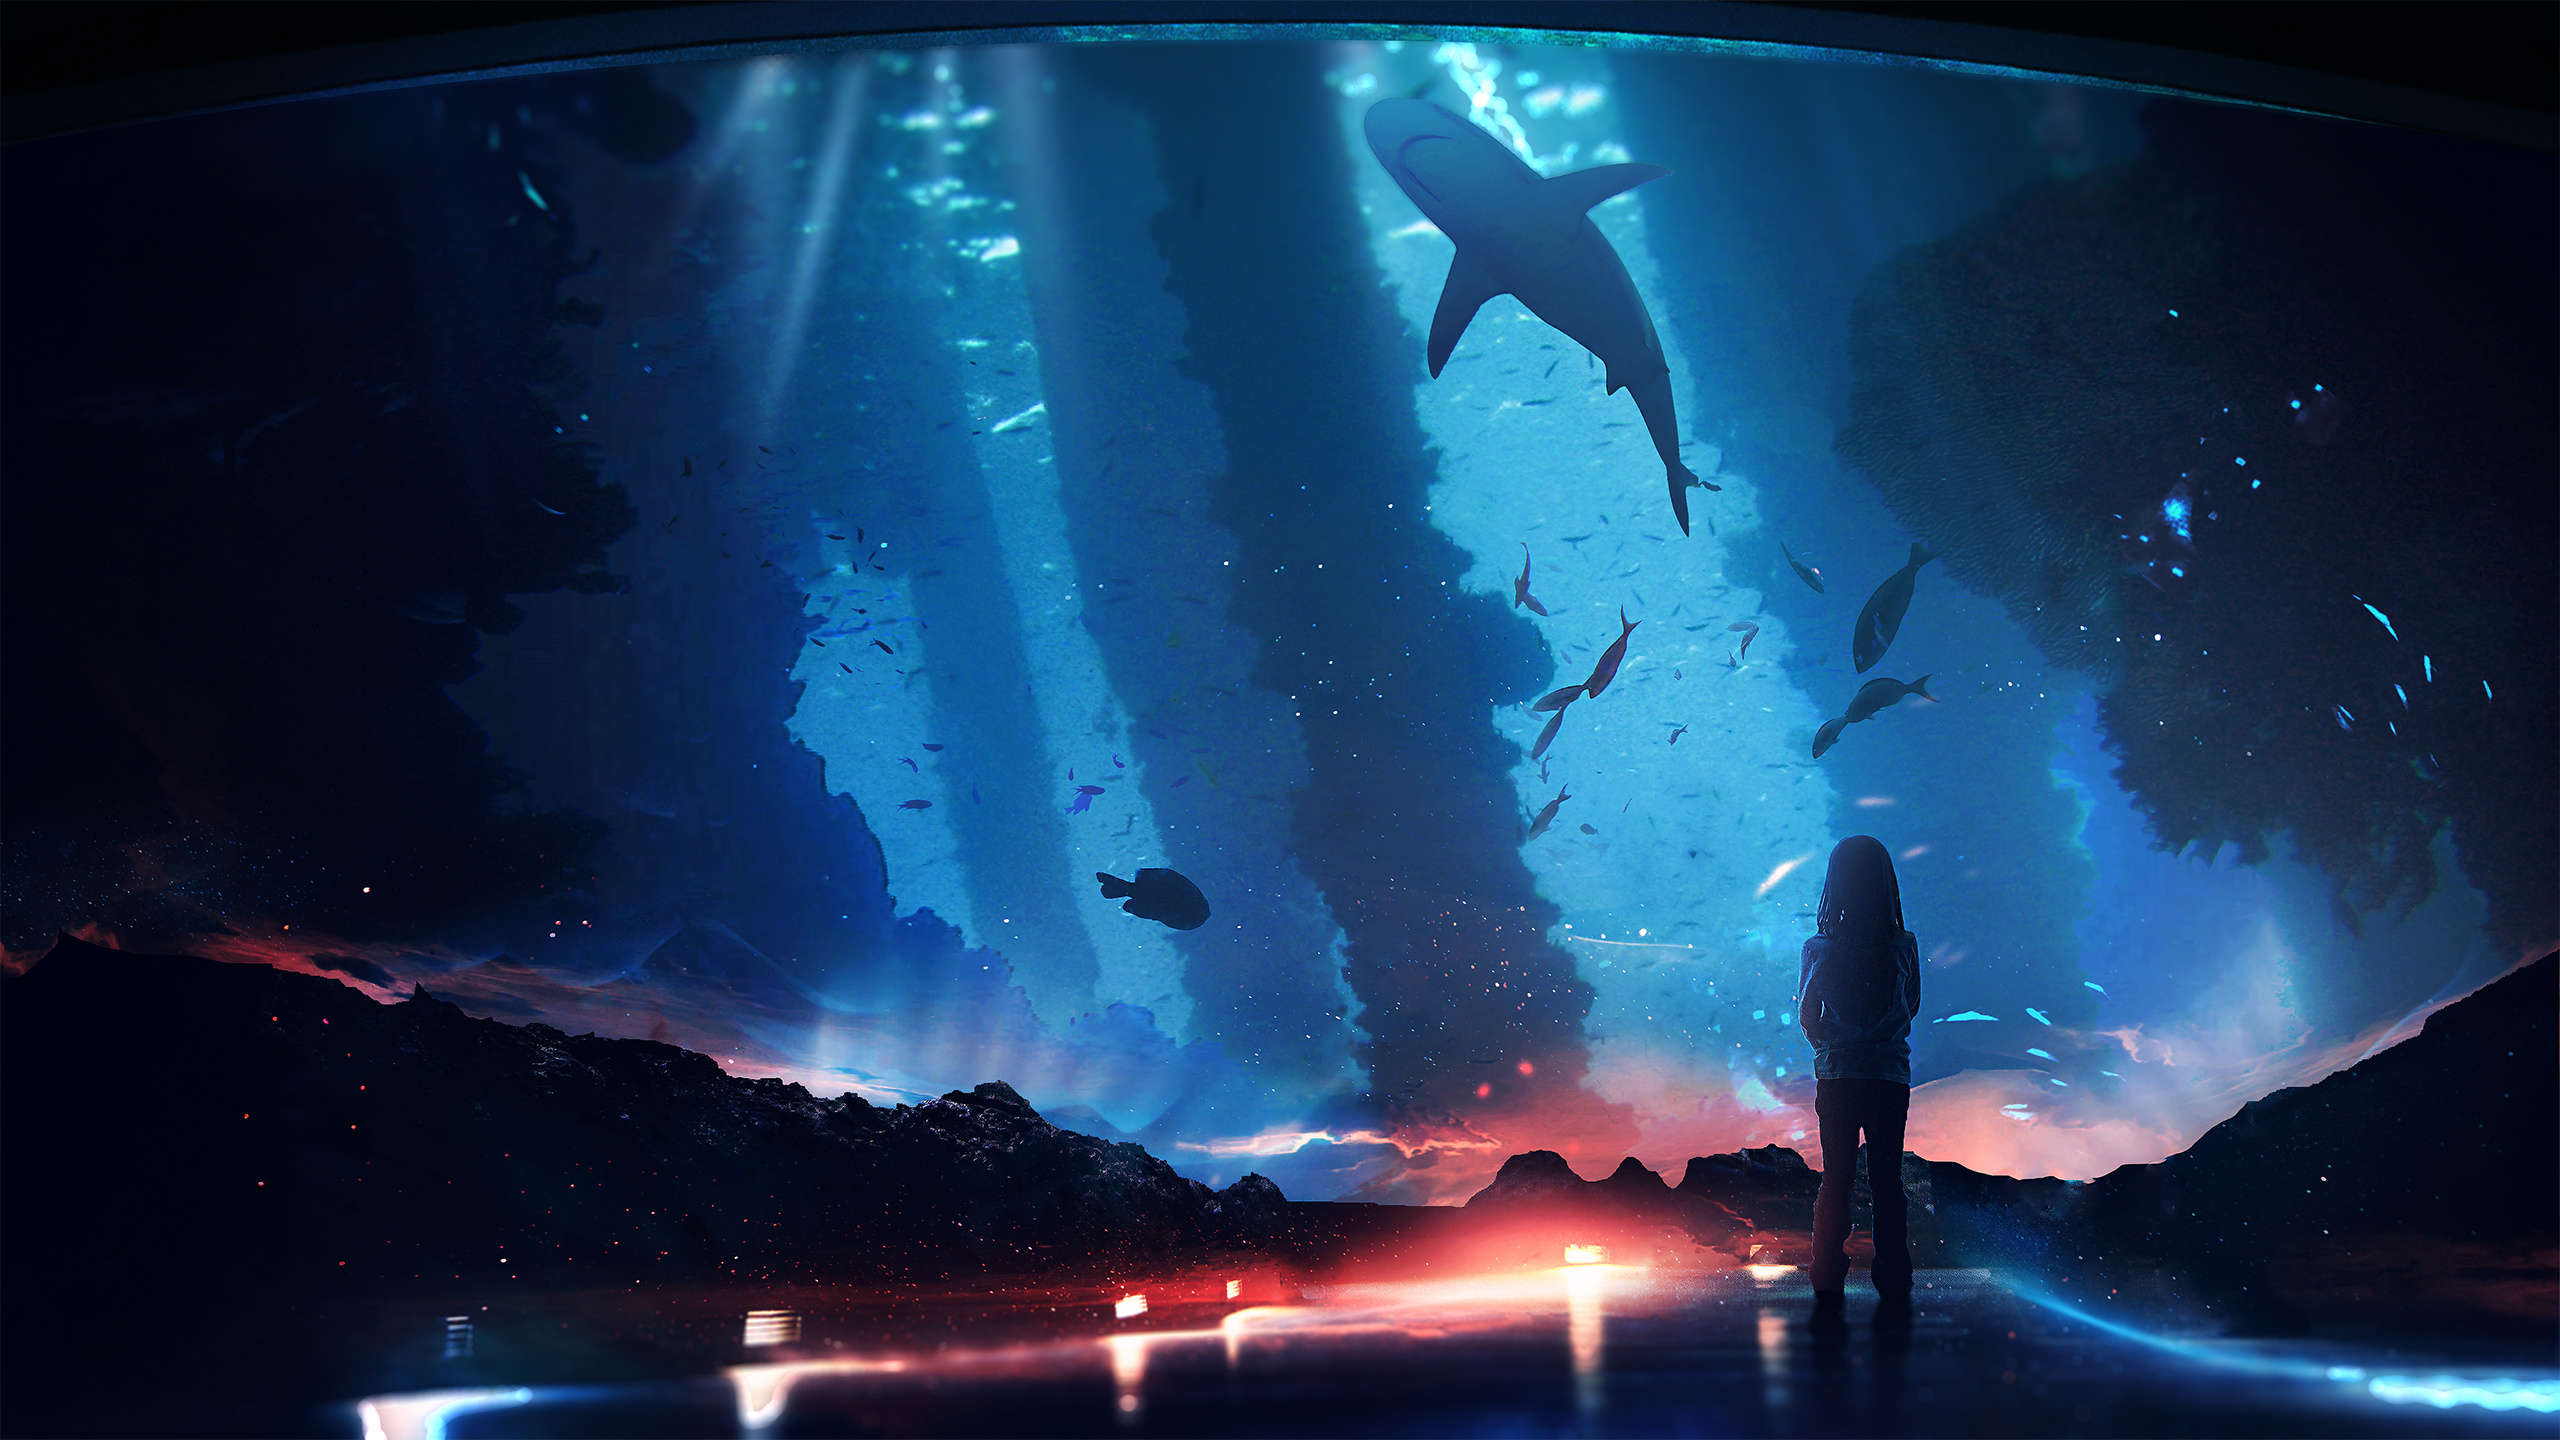 Aquarium, 4K live wallpaper, Aquatic life, Relaxing ambiance, Underwater enchantment, 2560x1440 HD Desktop